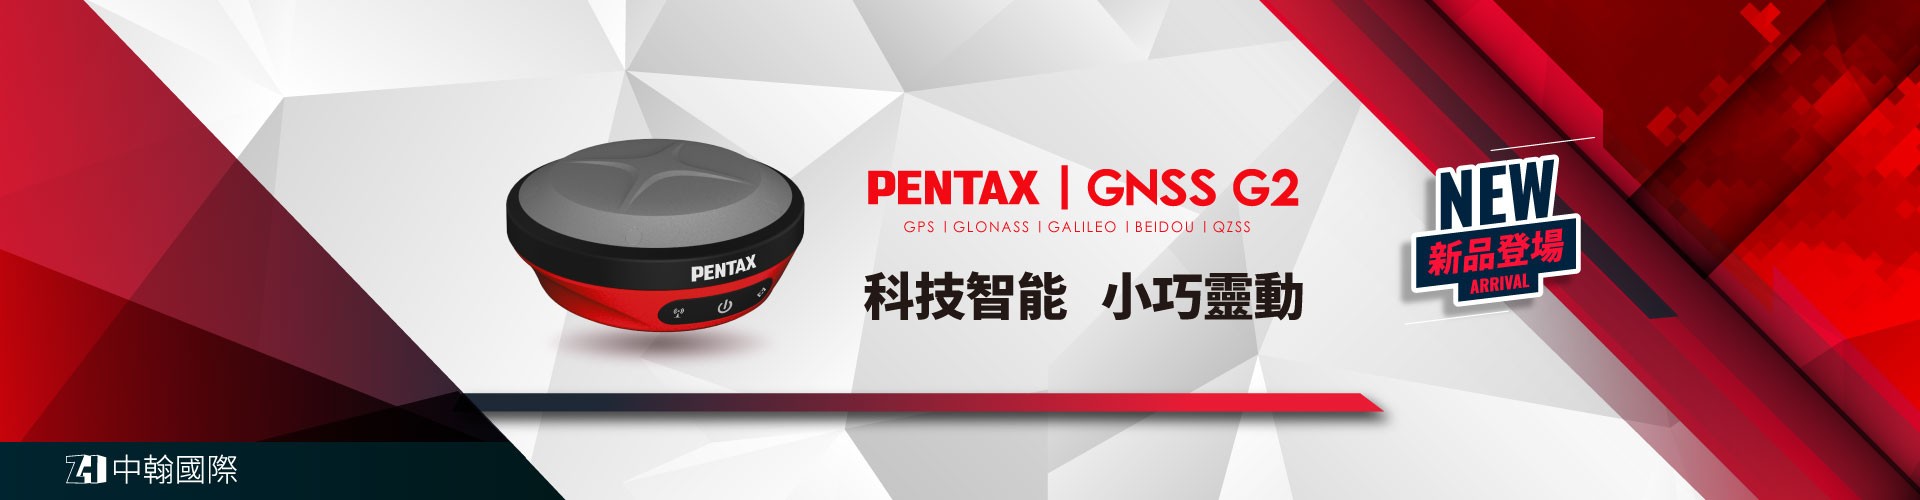 新品登場│Pentax G2 衛星定位儀，測量放樣新選擇！